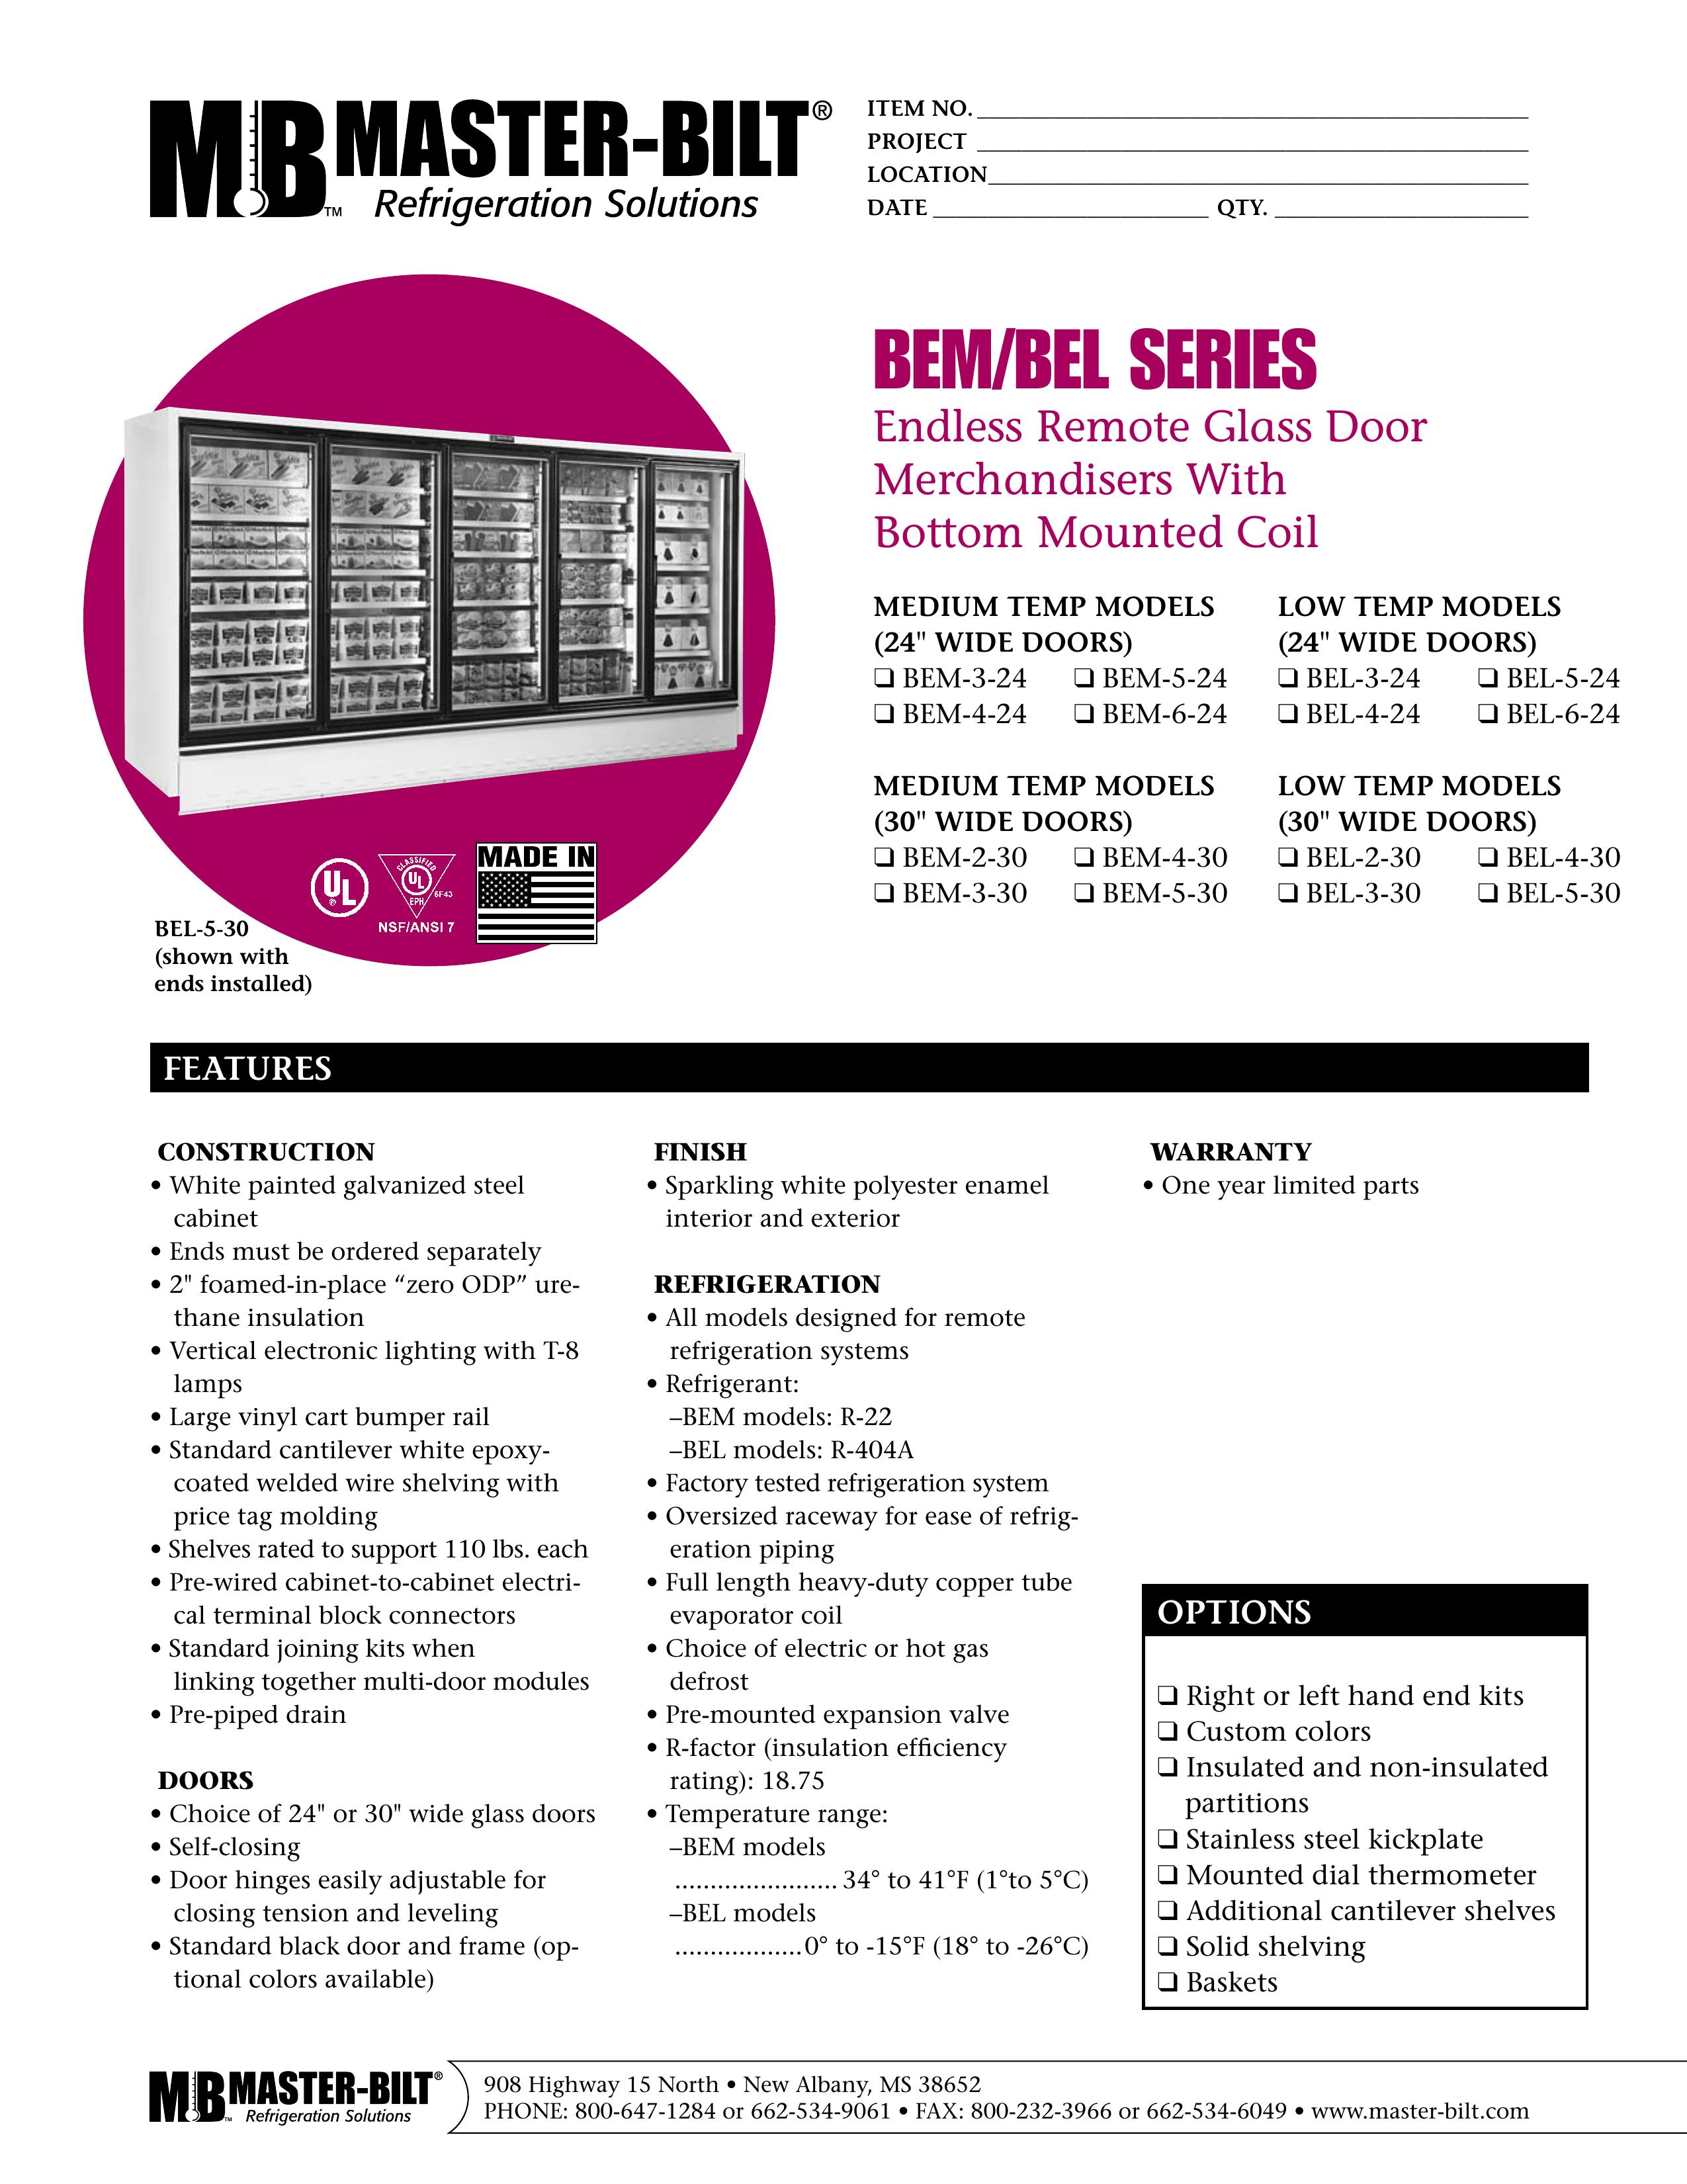 Master Bilt BEL-5-24 Refrigerator User Manual